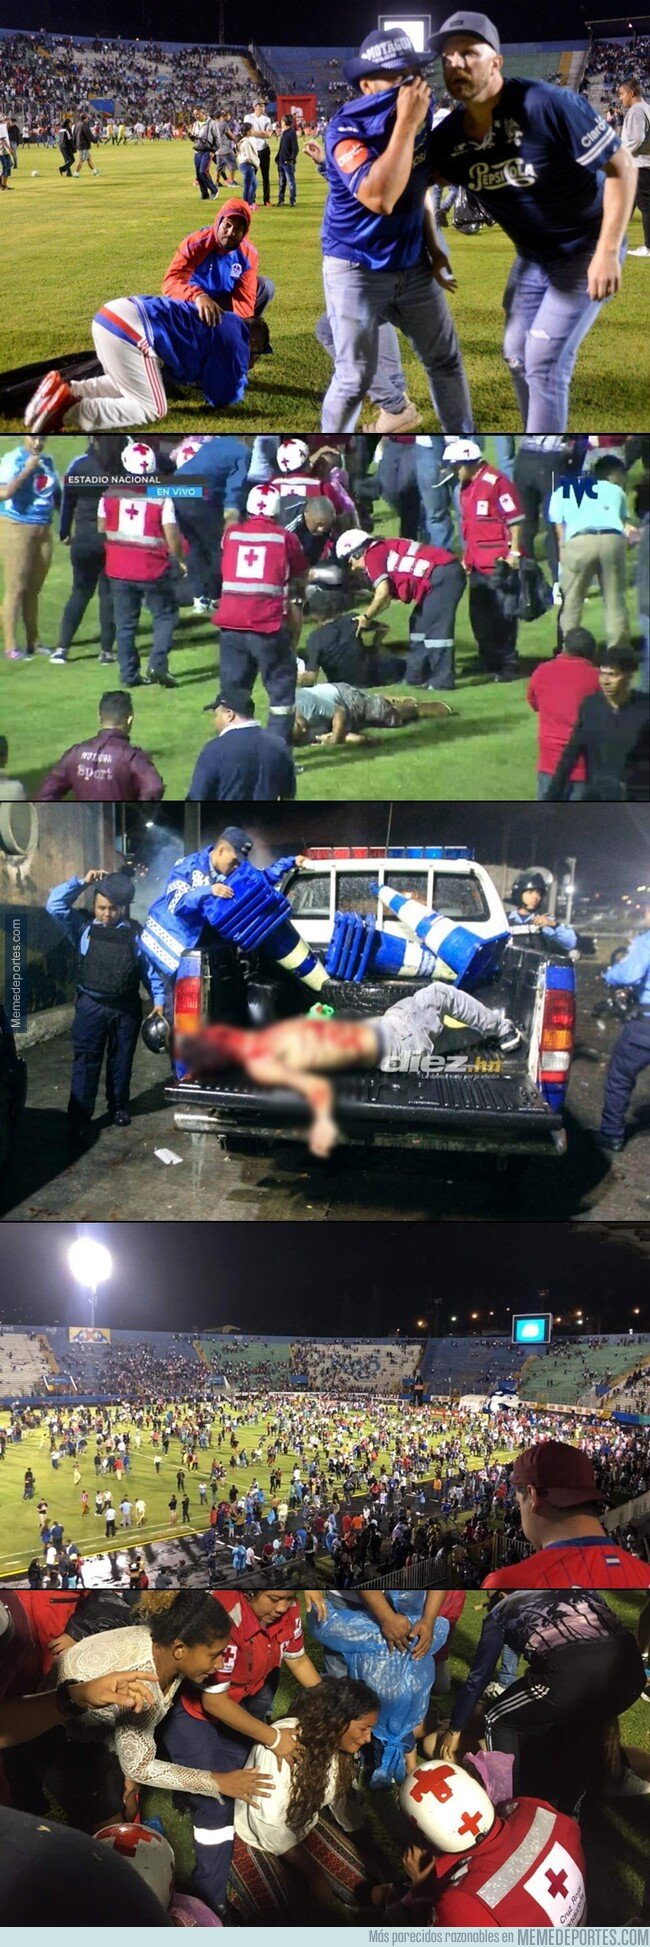 1083721 - No aprendemos. Un partido de fútbol en Honduras termina con 4 muertos y 8 heridos